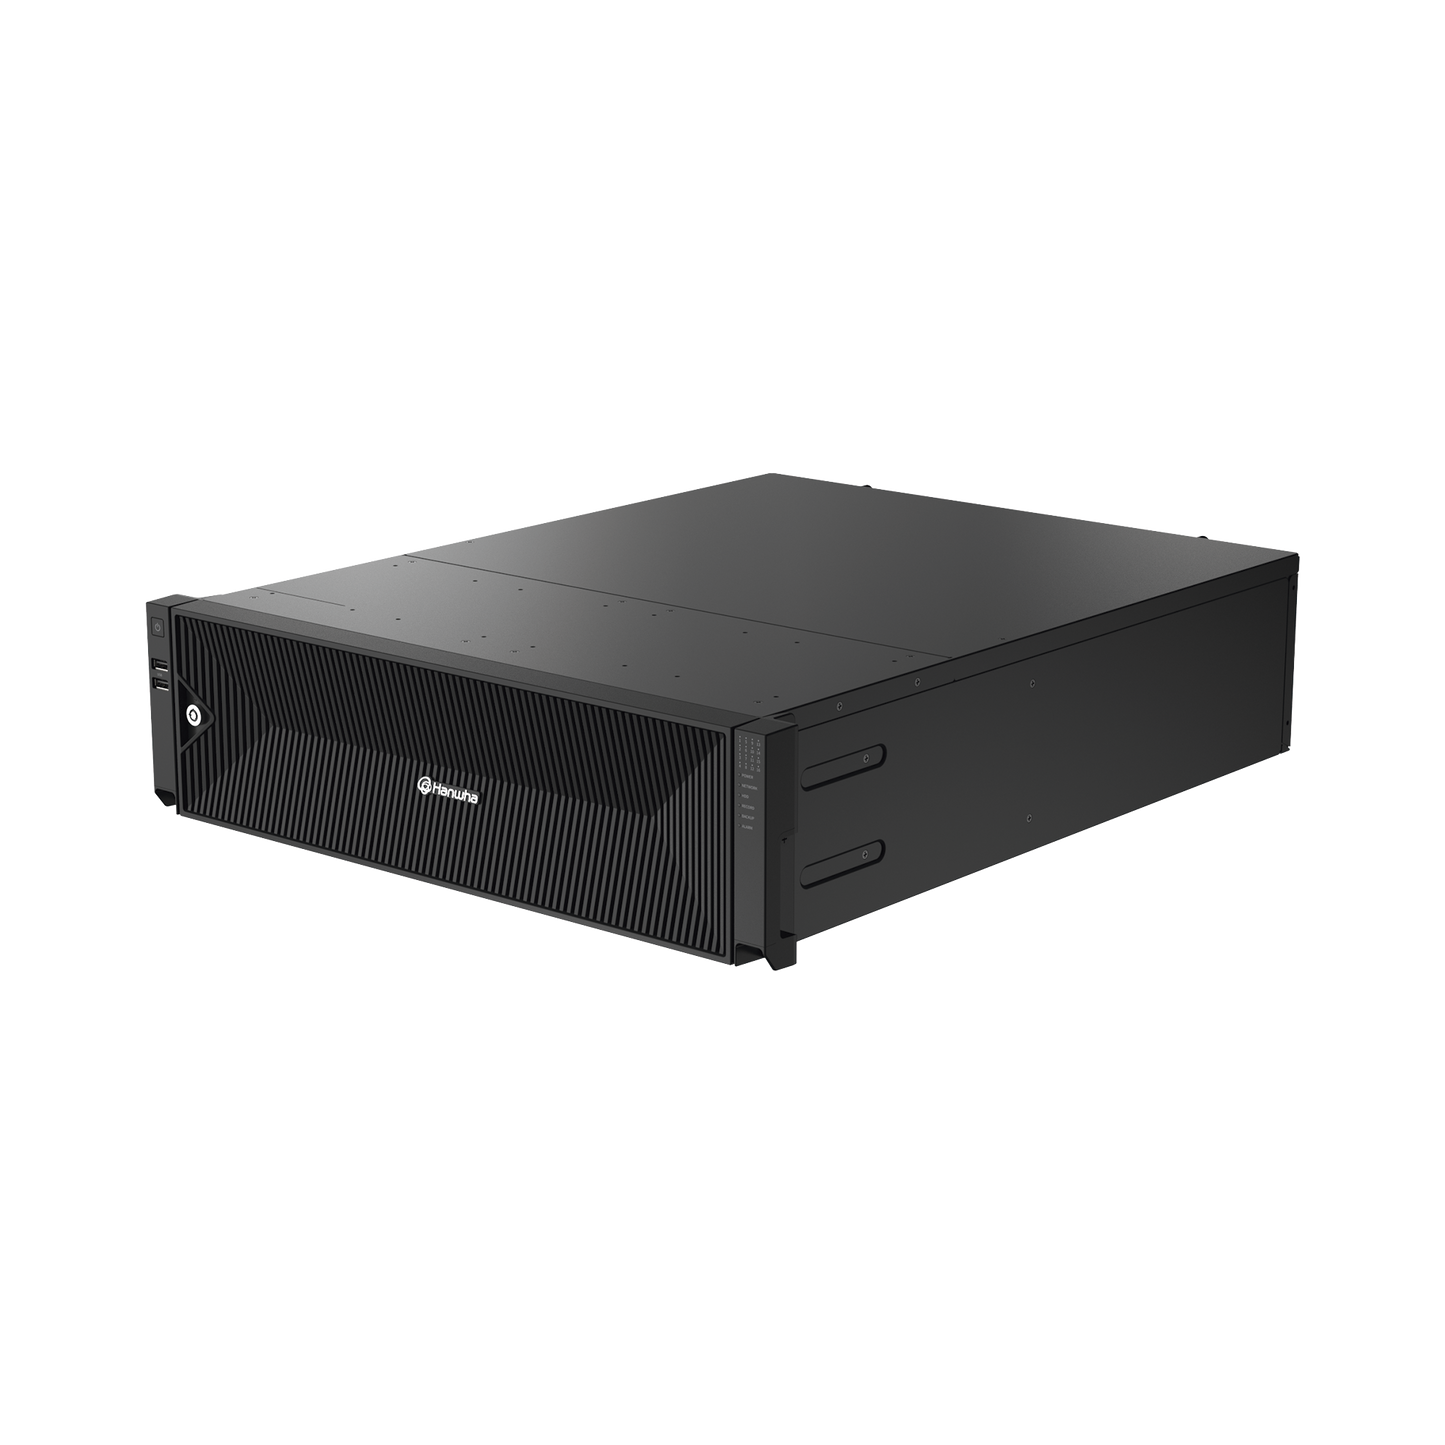 NVR de 64 canales /  Hasta 32 MP / H.265 & Wisestream / Procesamiento 400 Mbps / 3 Puertos de Red / Raid 5-6 / 16 bahias para disco duro (no incluidos)